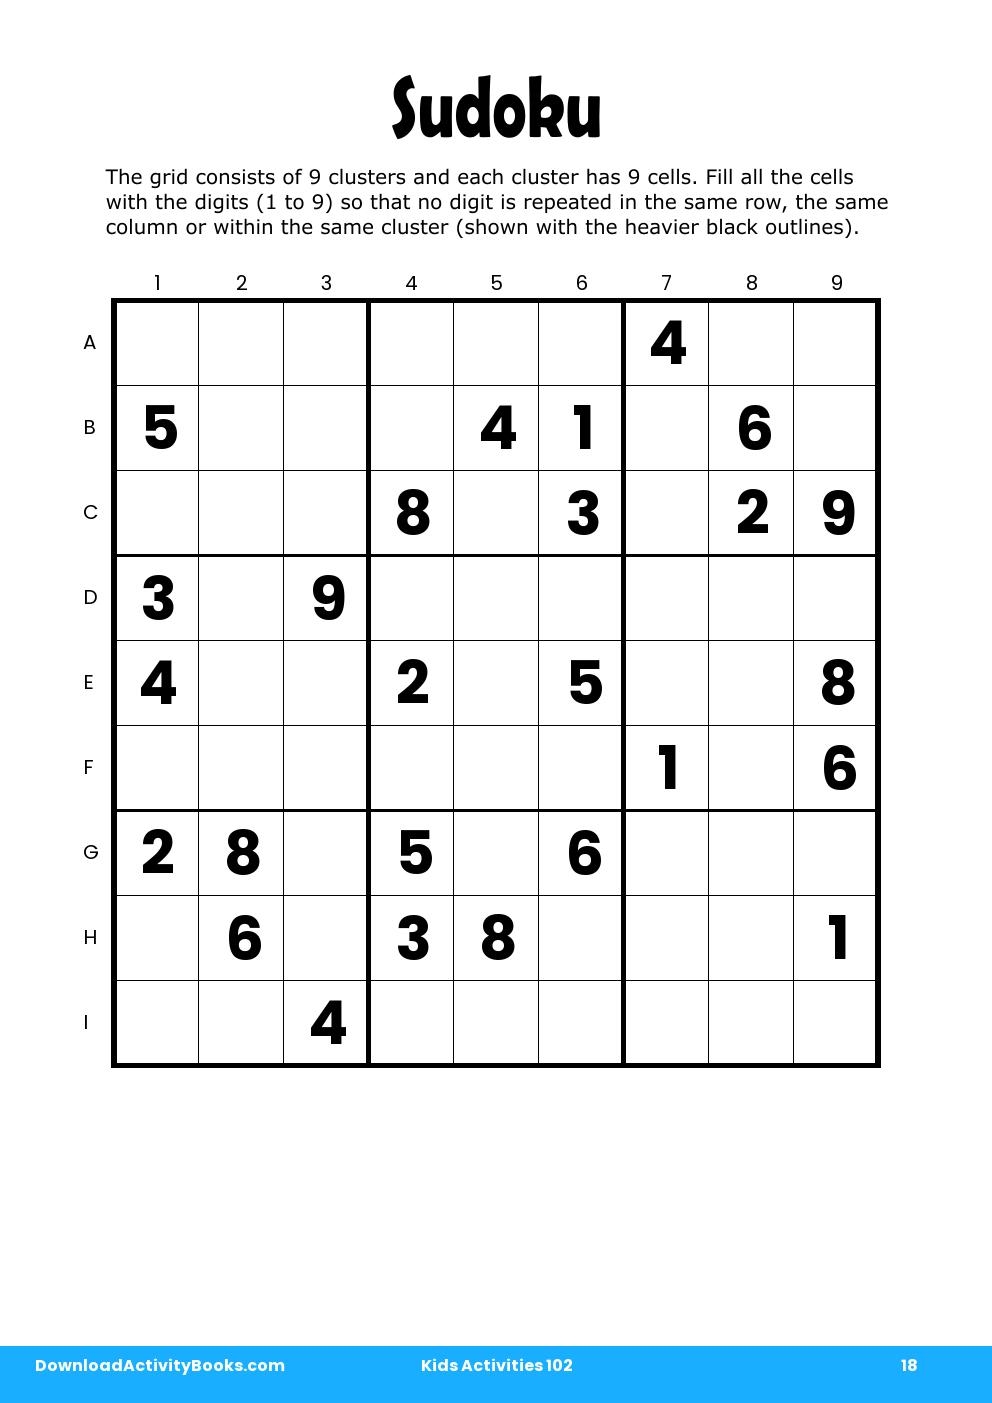 Sudoku in Kids Activities 102